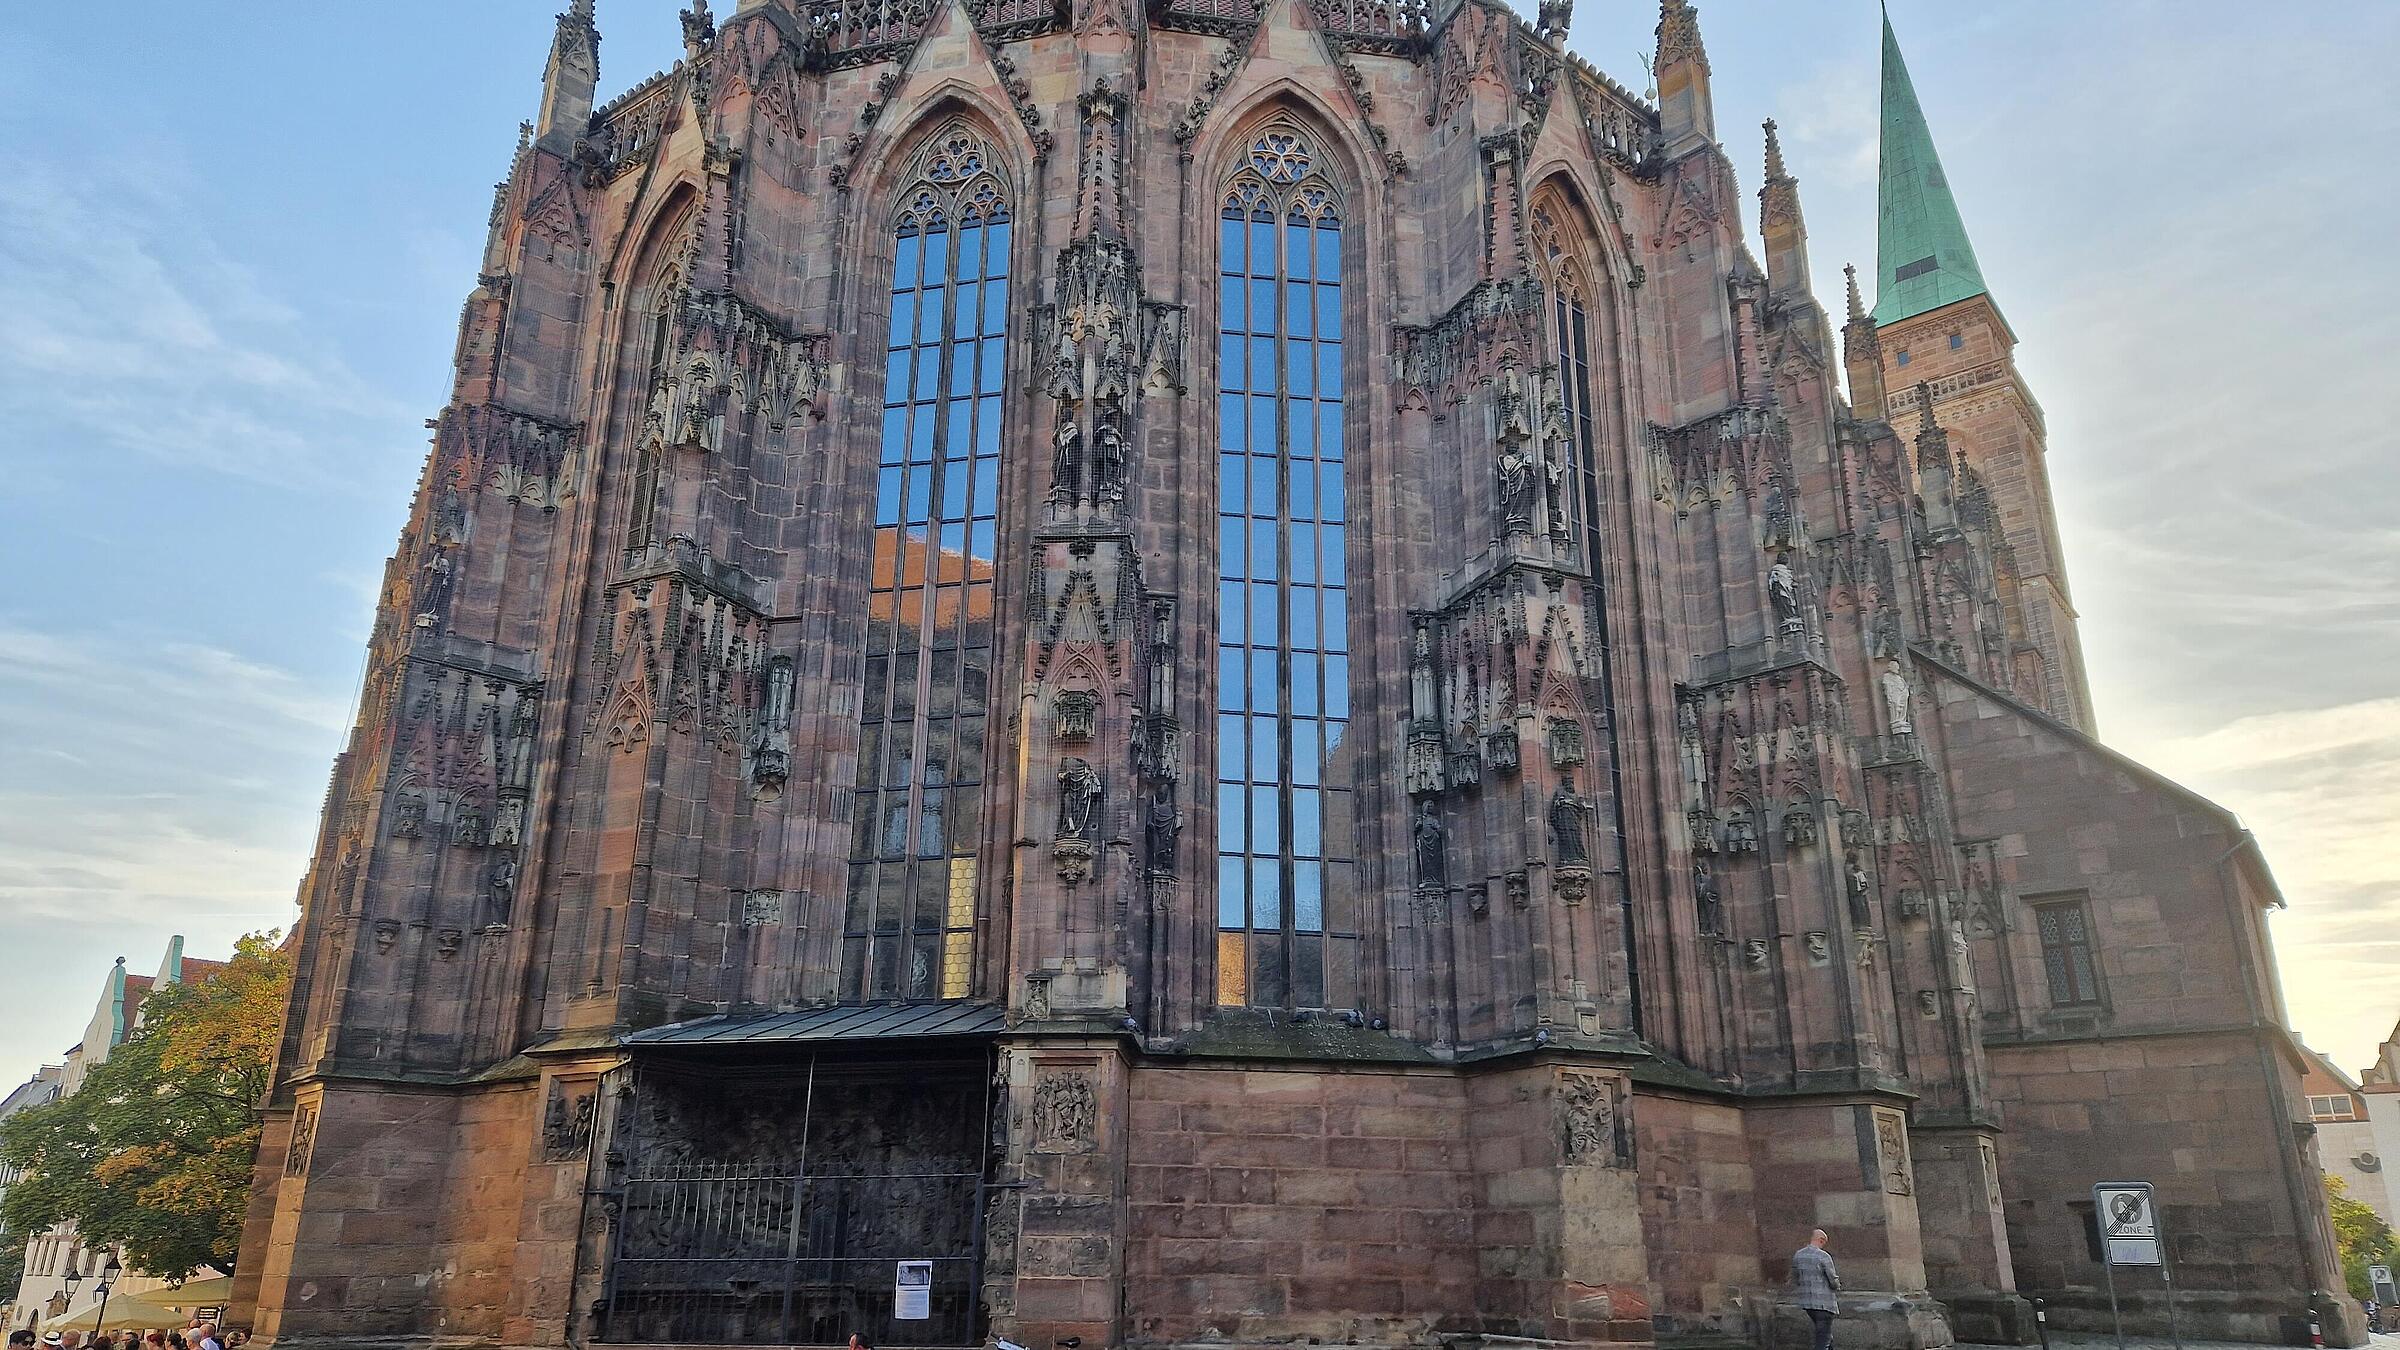 Außenaufnahme zeigt die Fassade der Nürnberger Frauenkirche.